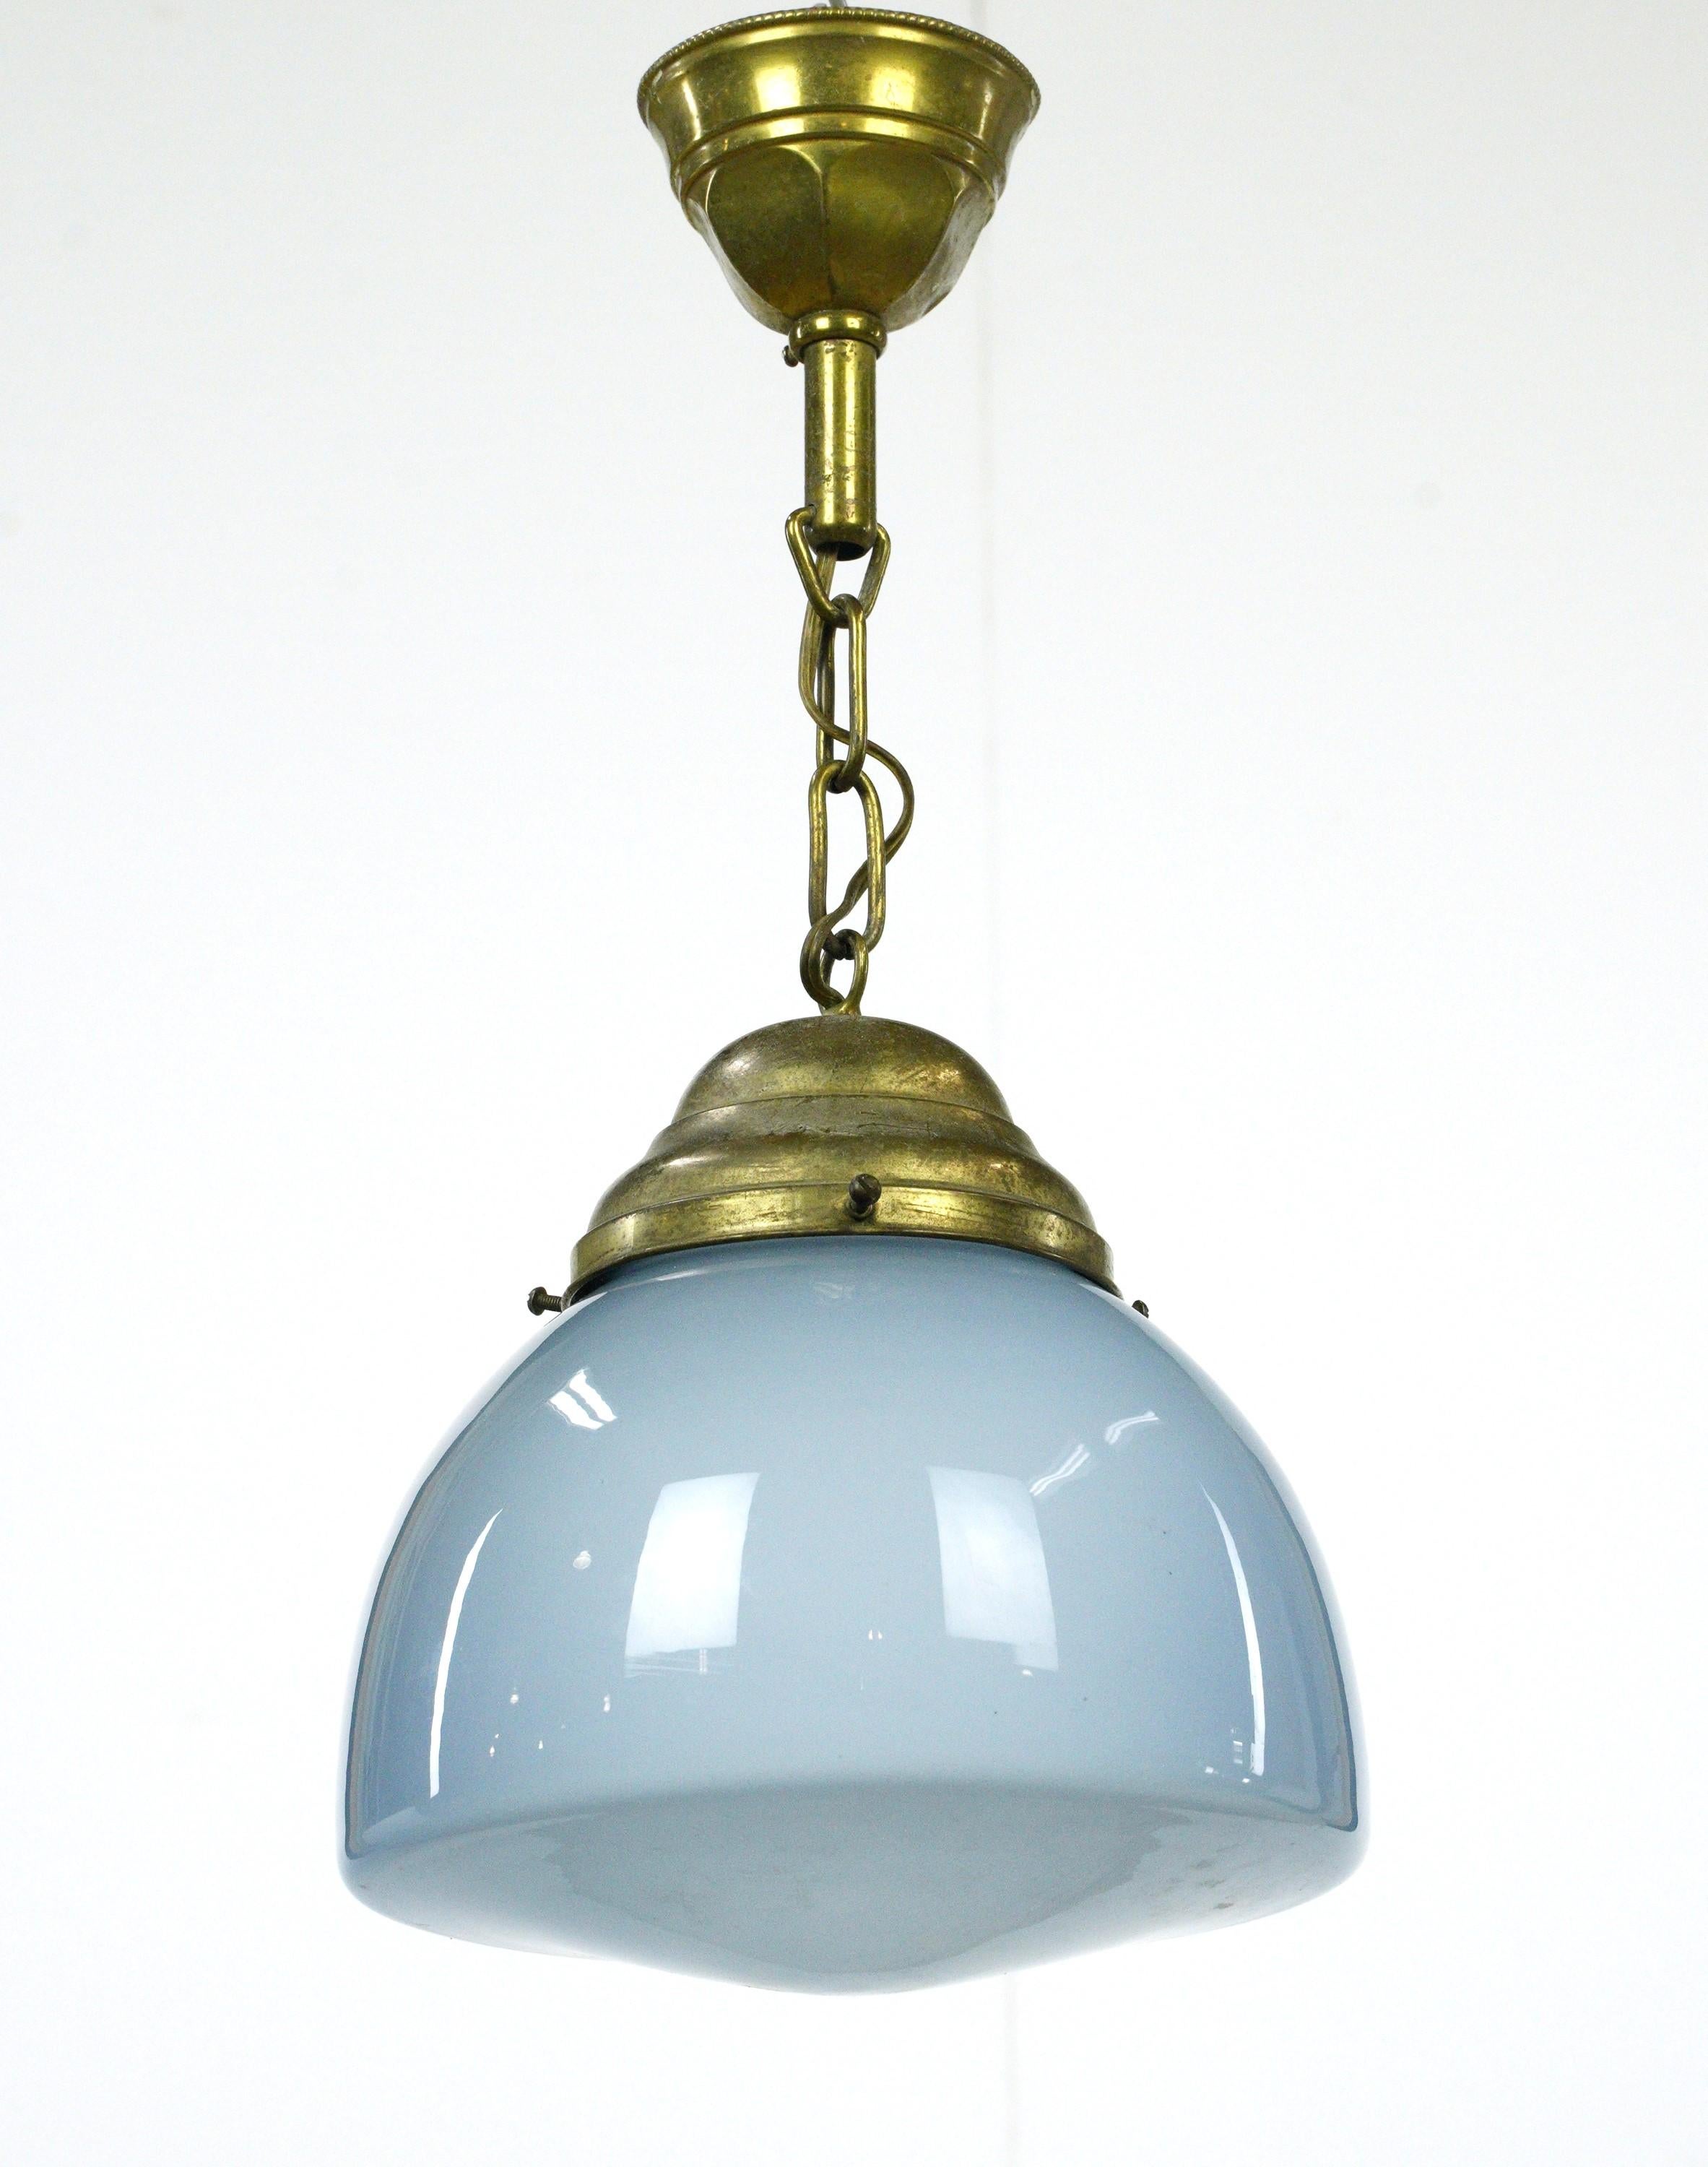 Lampe suspendue globe en verre bleu clair du 20ème siècle avec un support en laiton. Elle nécessite une ampoule standard à culot moyen. Le prix comprend la restauration, le nettoyage et le recâblage. Bon état avec une usure appropriée due à l'âge.